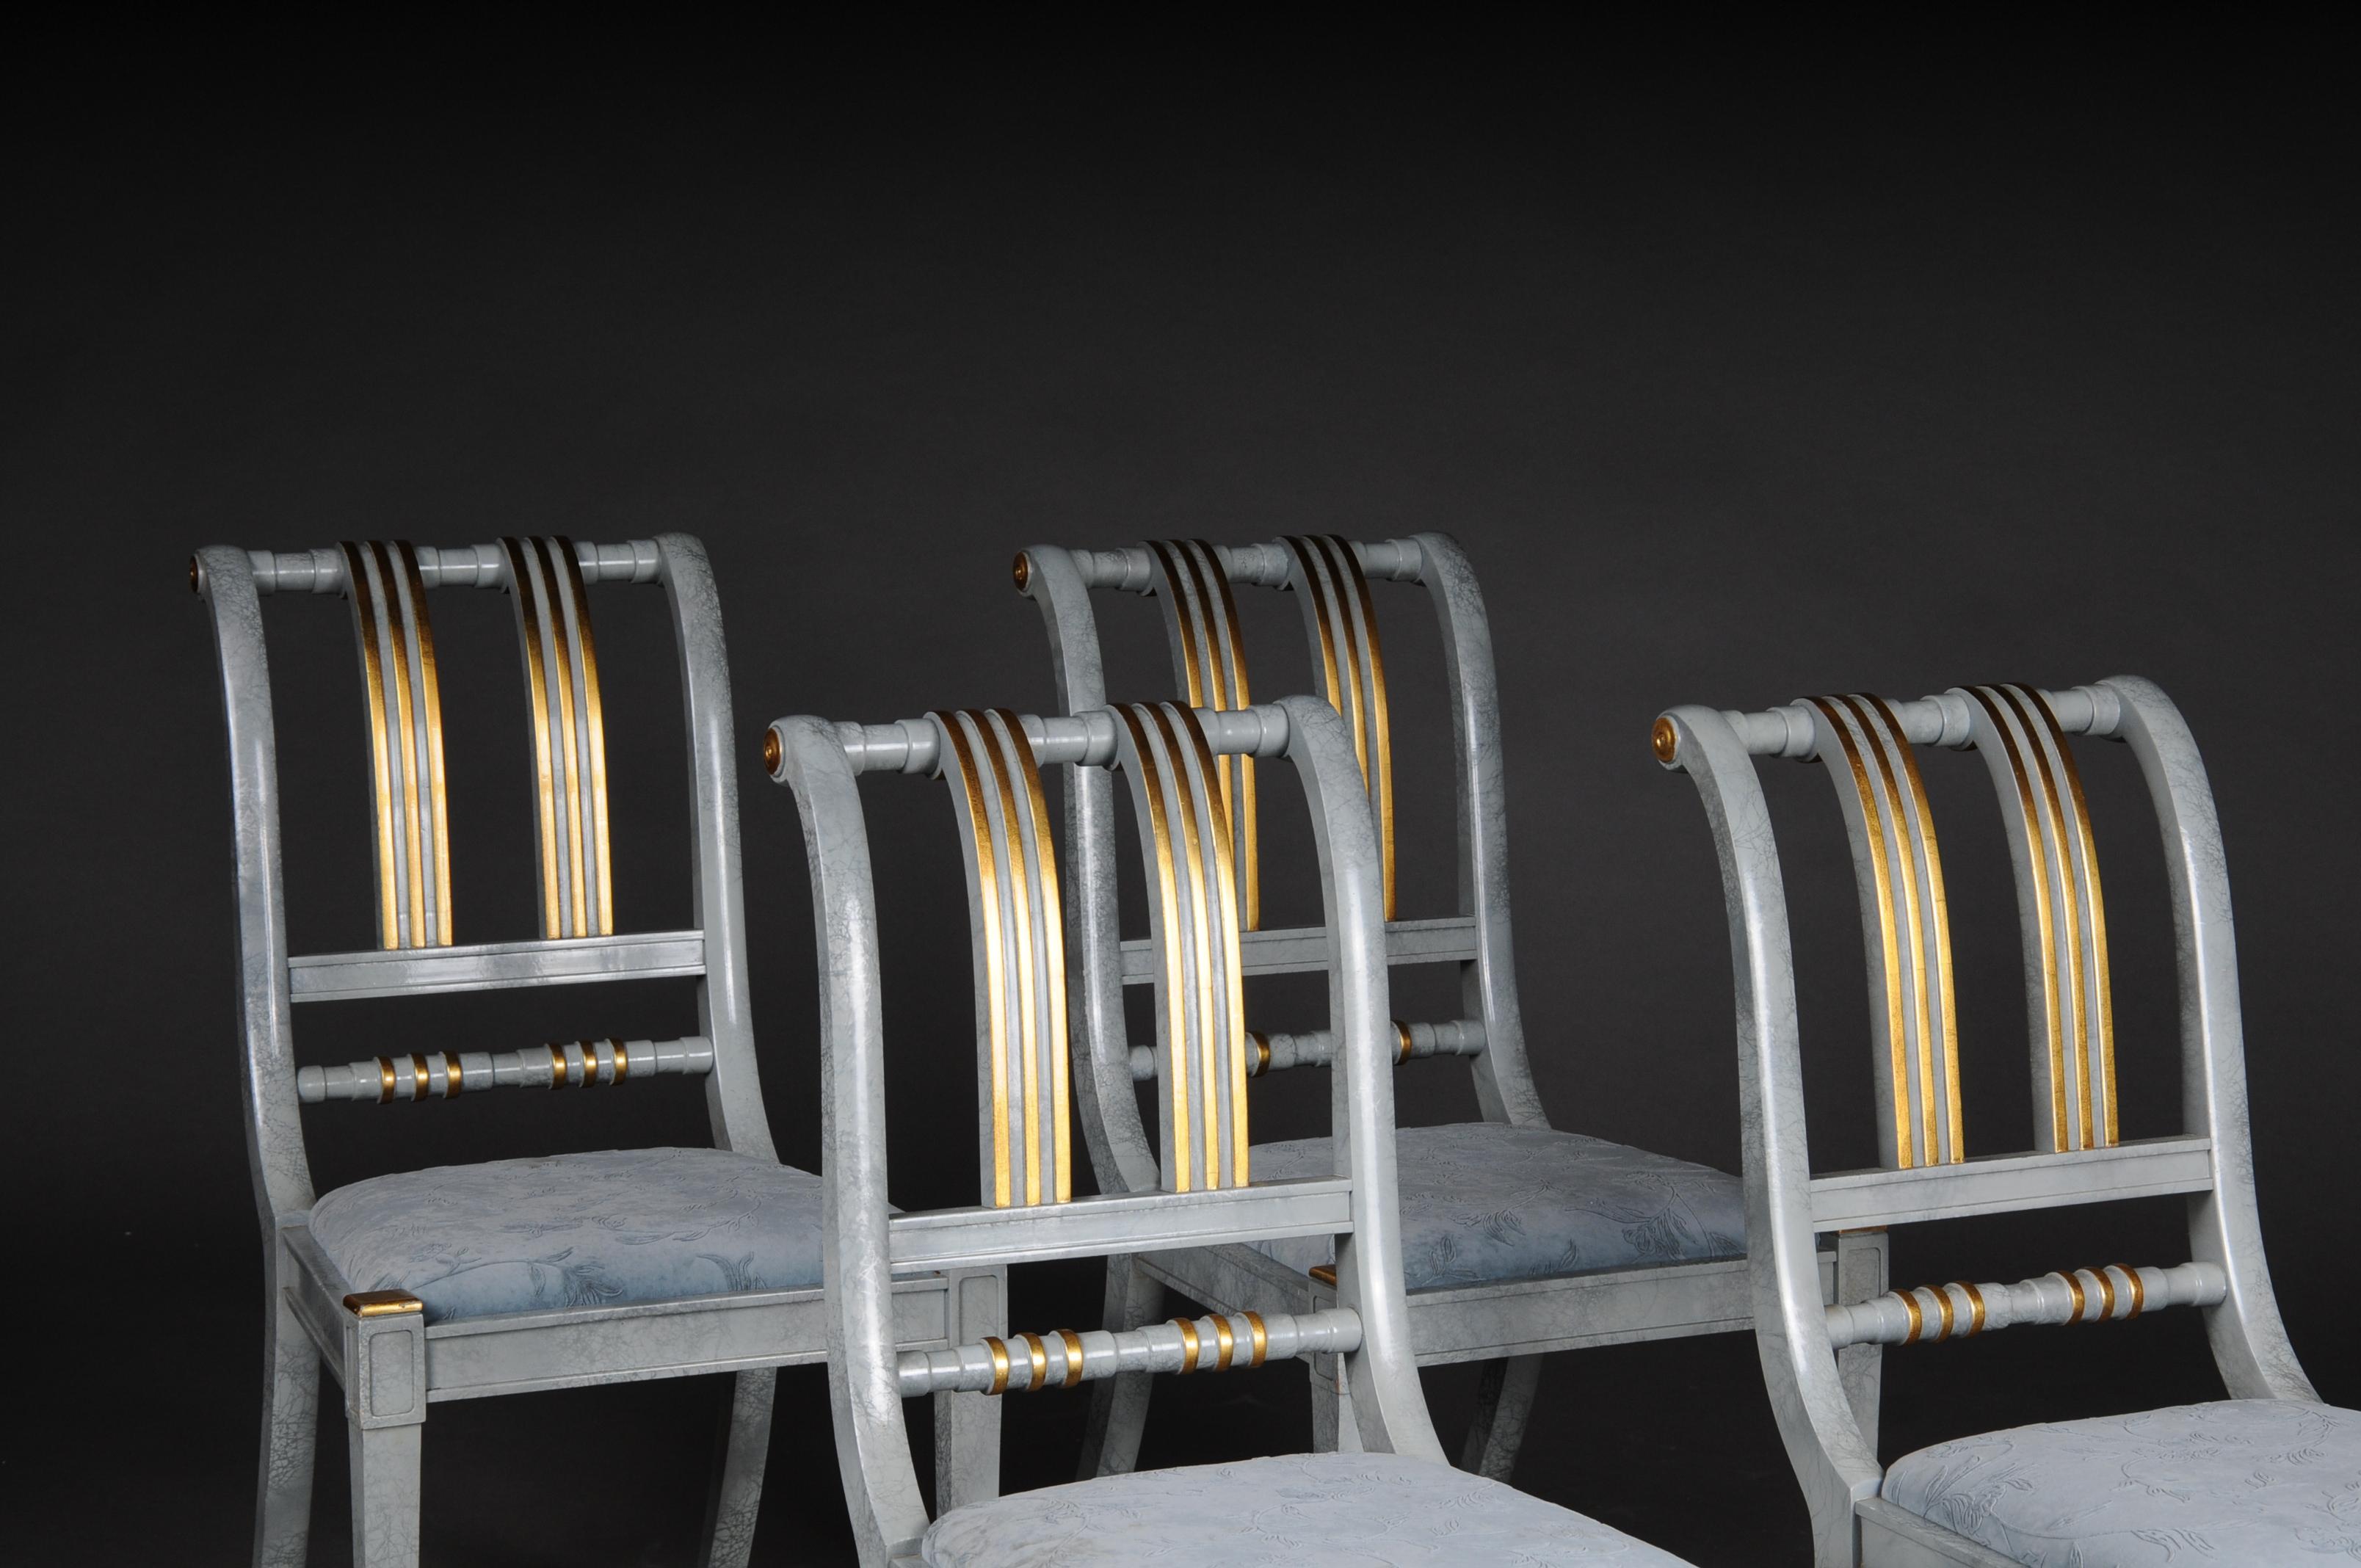 20. Jahrhundert det von 4 italienischen Designer-Stühlen, Holz.

Massivholzrahmen, marmoriert, teilweise mit Gold verziert. Äußerst hohe Verarbeitungsqualität. Rückenlehne mit goldenen Streben verziert. Gepolsterter Sitz aus hochwertigem